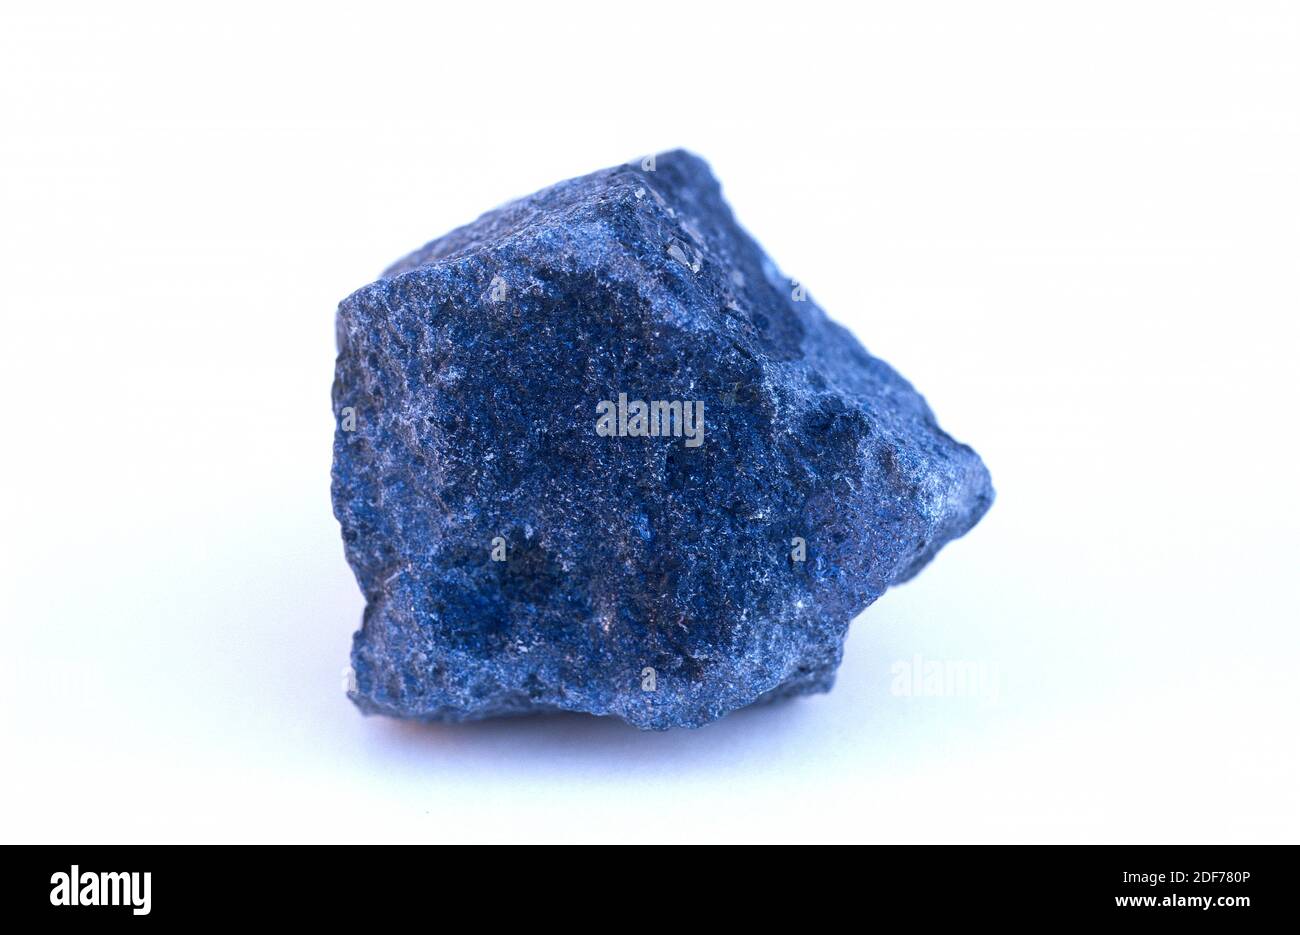 La kimberlita es una roca ígnea proveniente del manto de la tierra, es el principal depósito de diamantes. Foto de stock